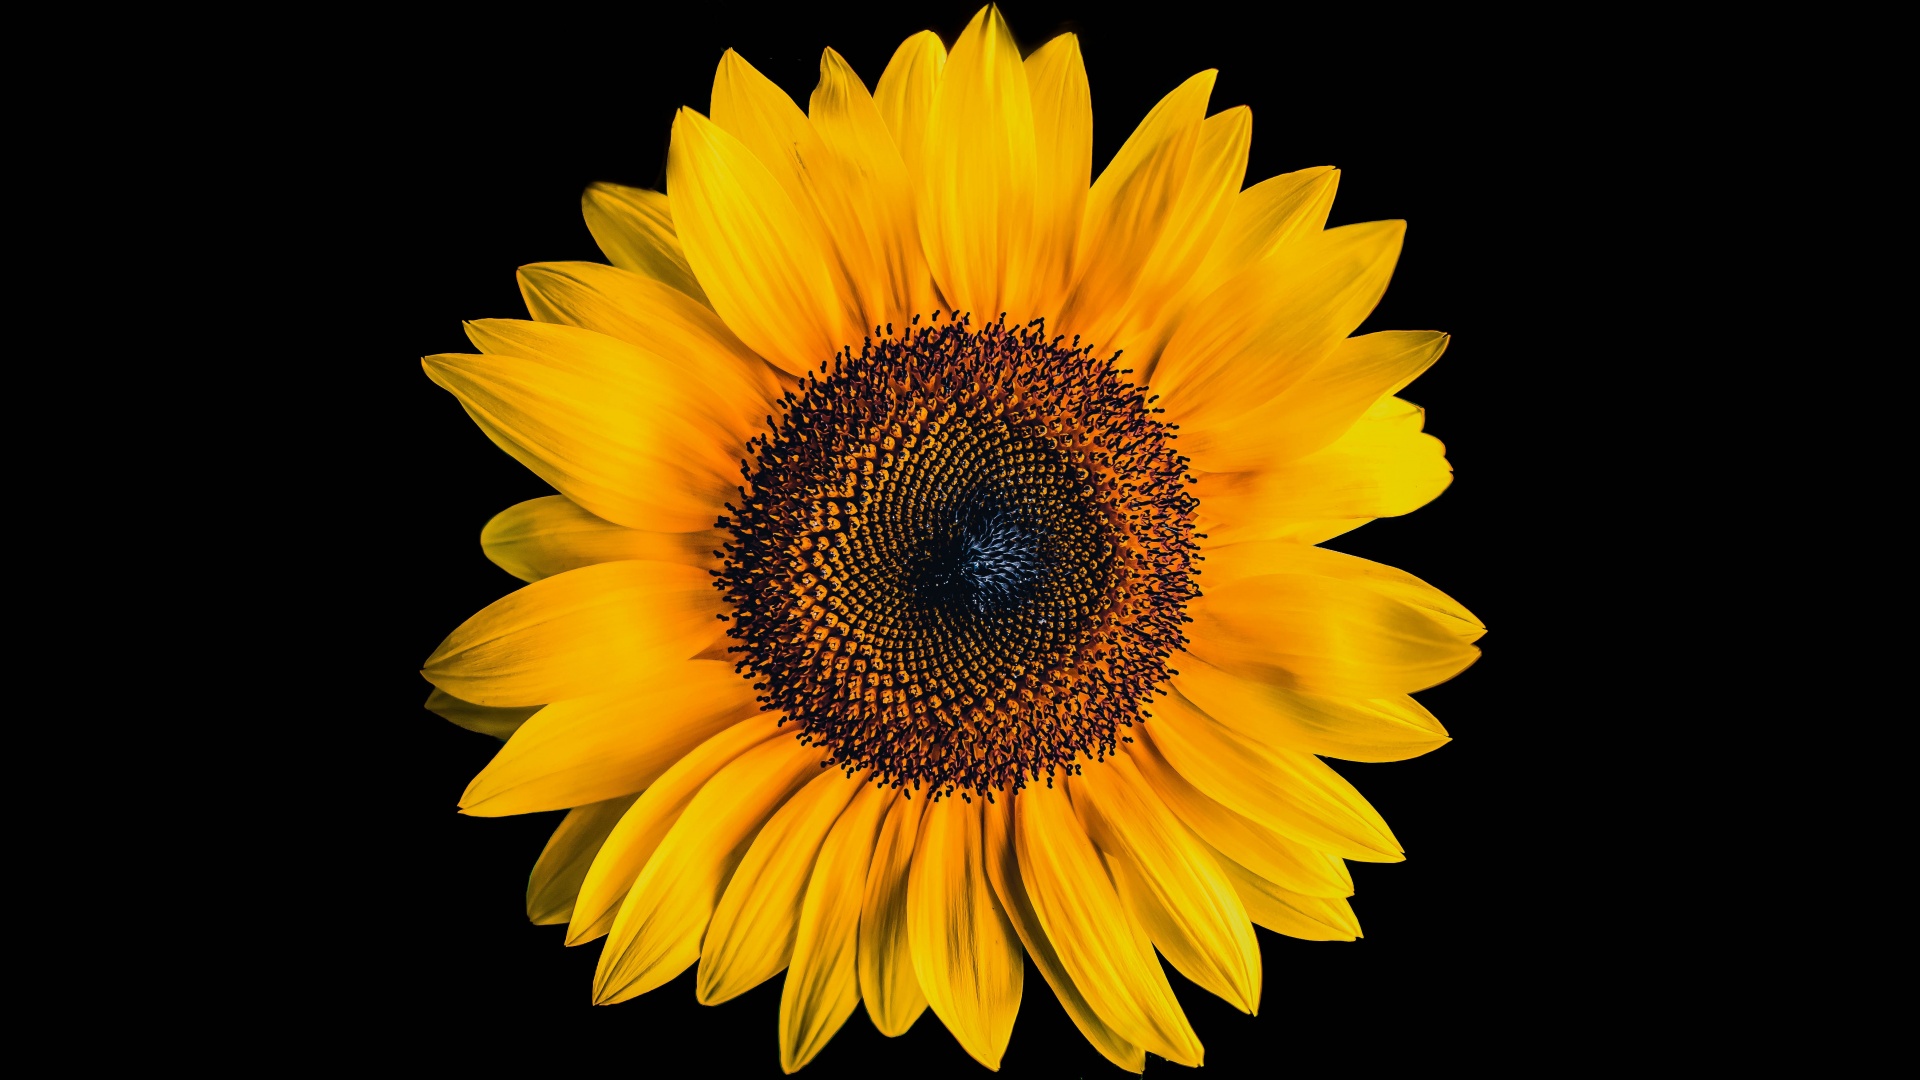 Sunflower Wallpaper 4K, Black background, Yellow flower, 5K, Flowers, #2299